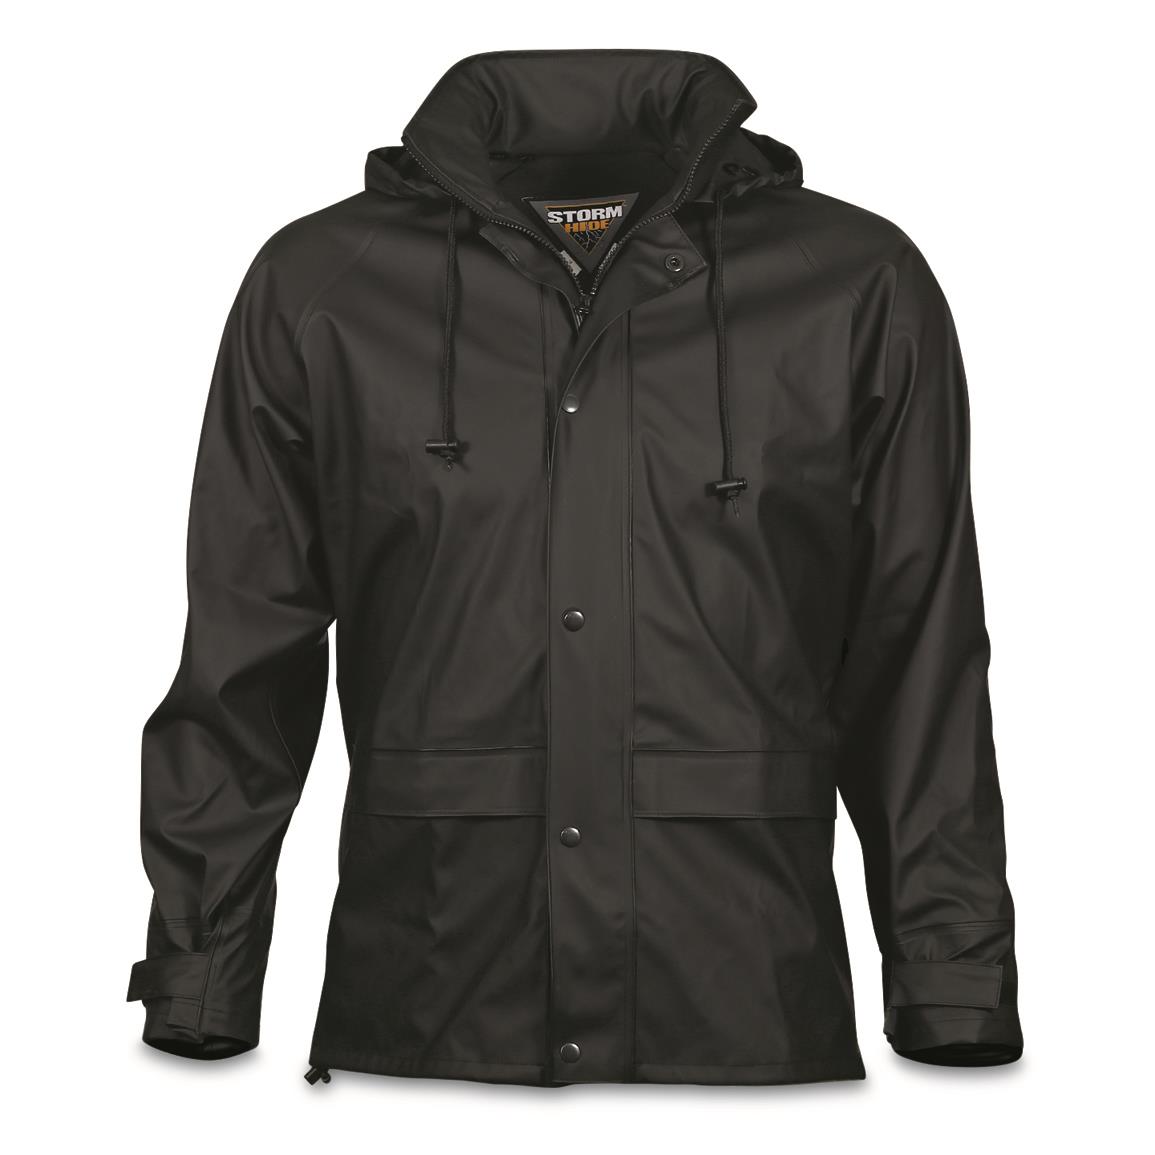 StormHide Down Pour Rain Jacket Men's Waterproof Size XL WX2-232236 New 